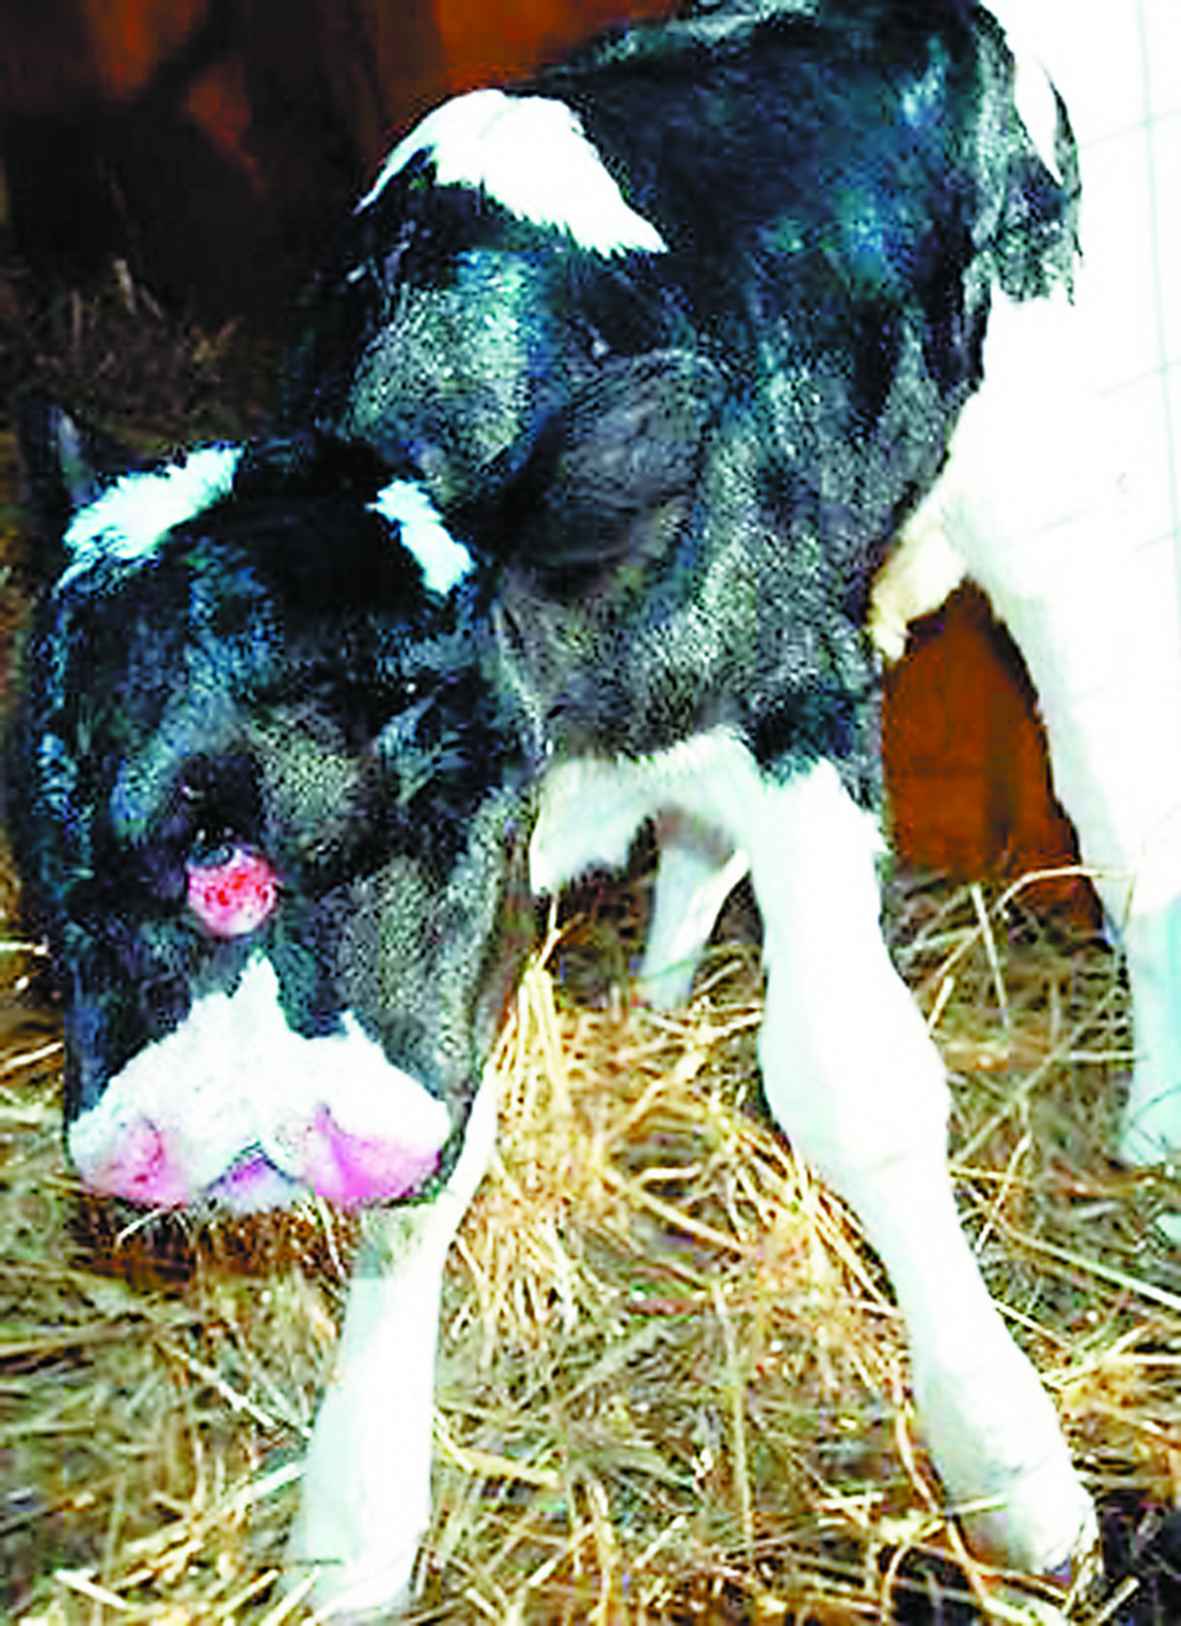 据美国媒体1月5日报道,位于美国弗吉尼亚州的一家奶牛场传出惊人